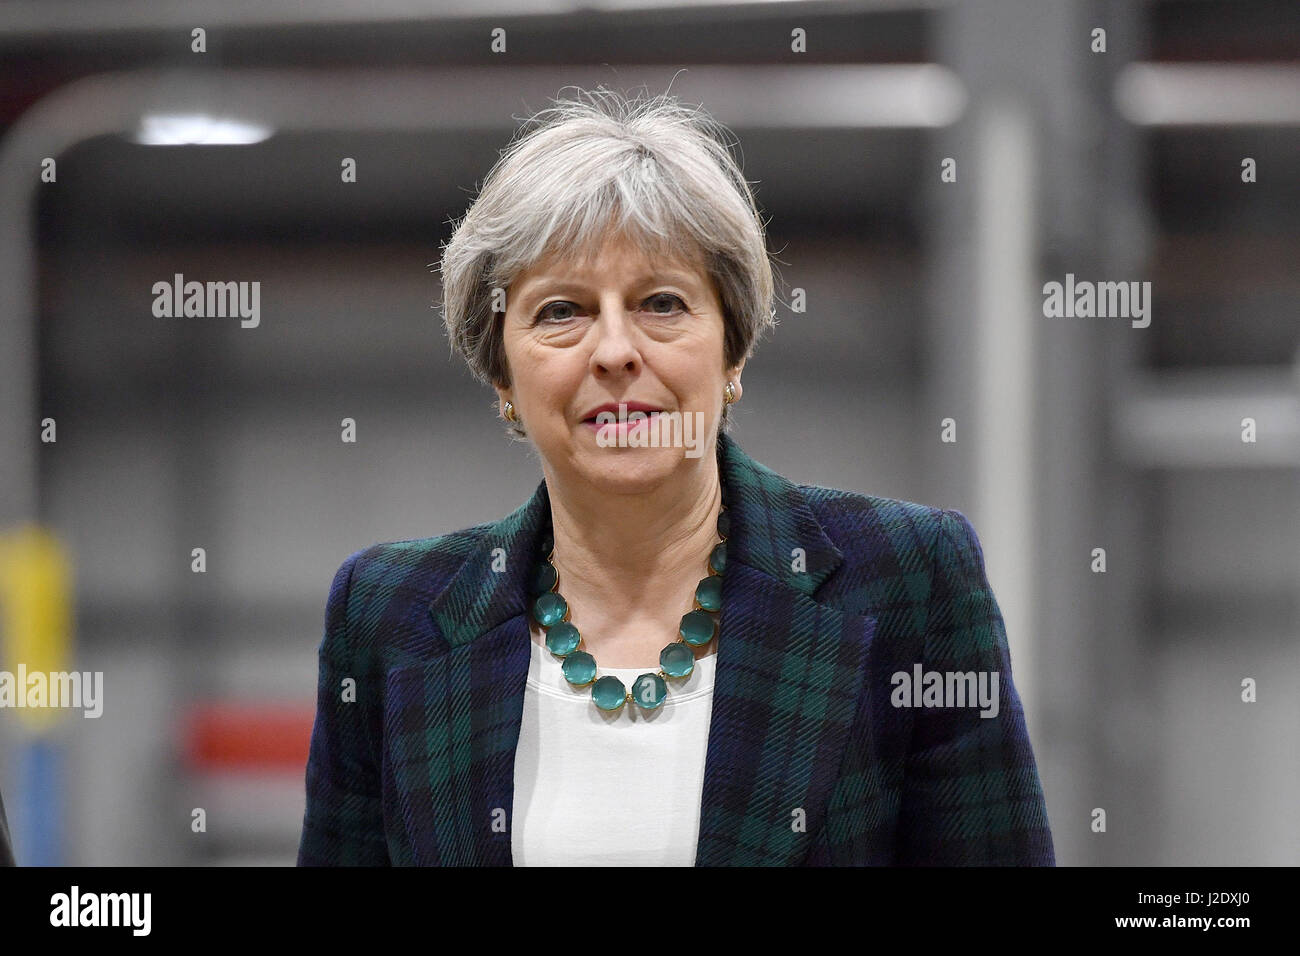 Premierminister Theresa Mai während eines Besuchs in IKO polymetrischen in Chesterfield, Vereinigtes Königreich, während auf Wahlkampftour Wahl. Stockfoto